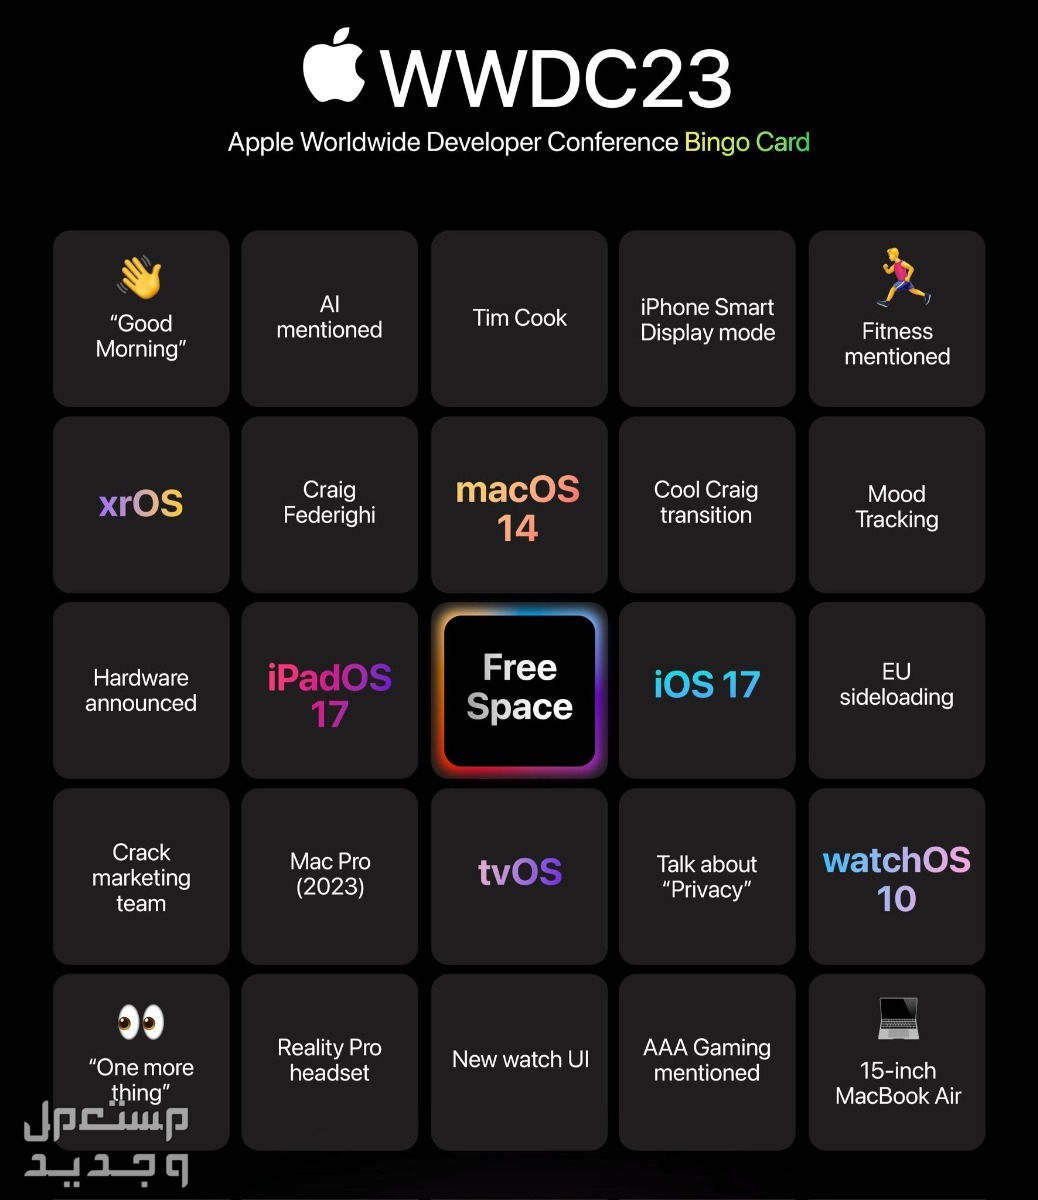 ما الجديد الذي يقدمه نظام ابل الجديد iOS 17 في الكويت